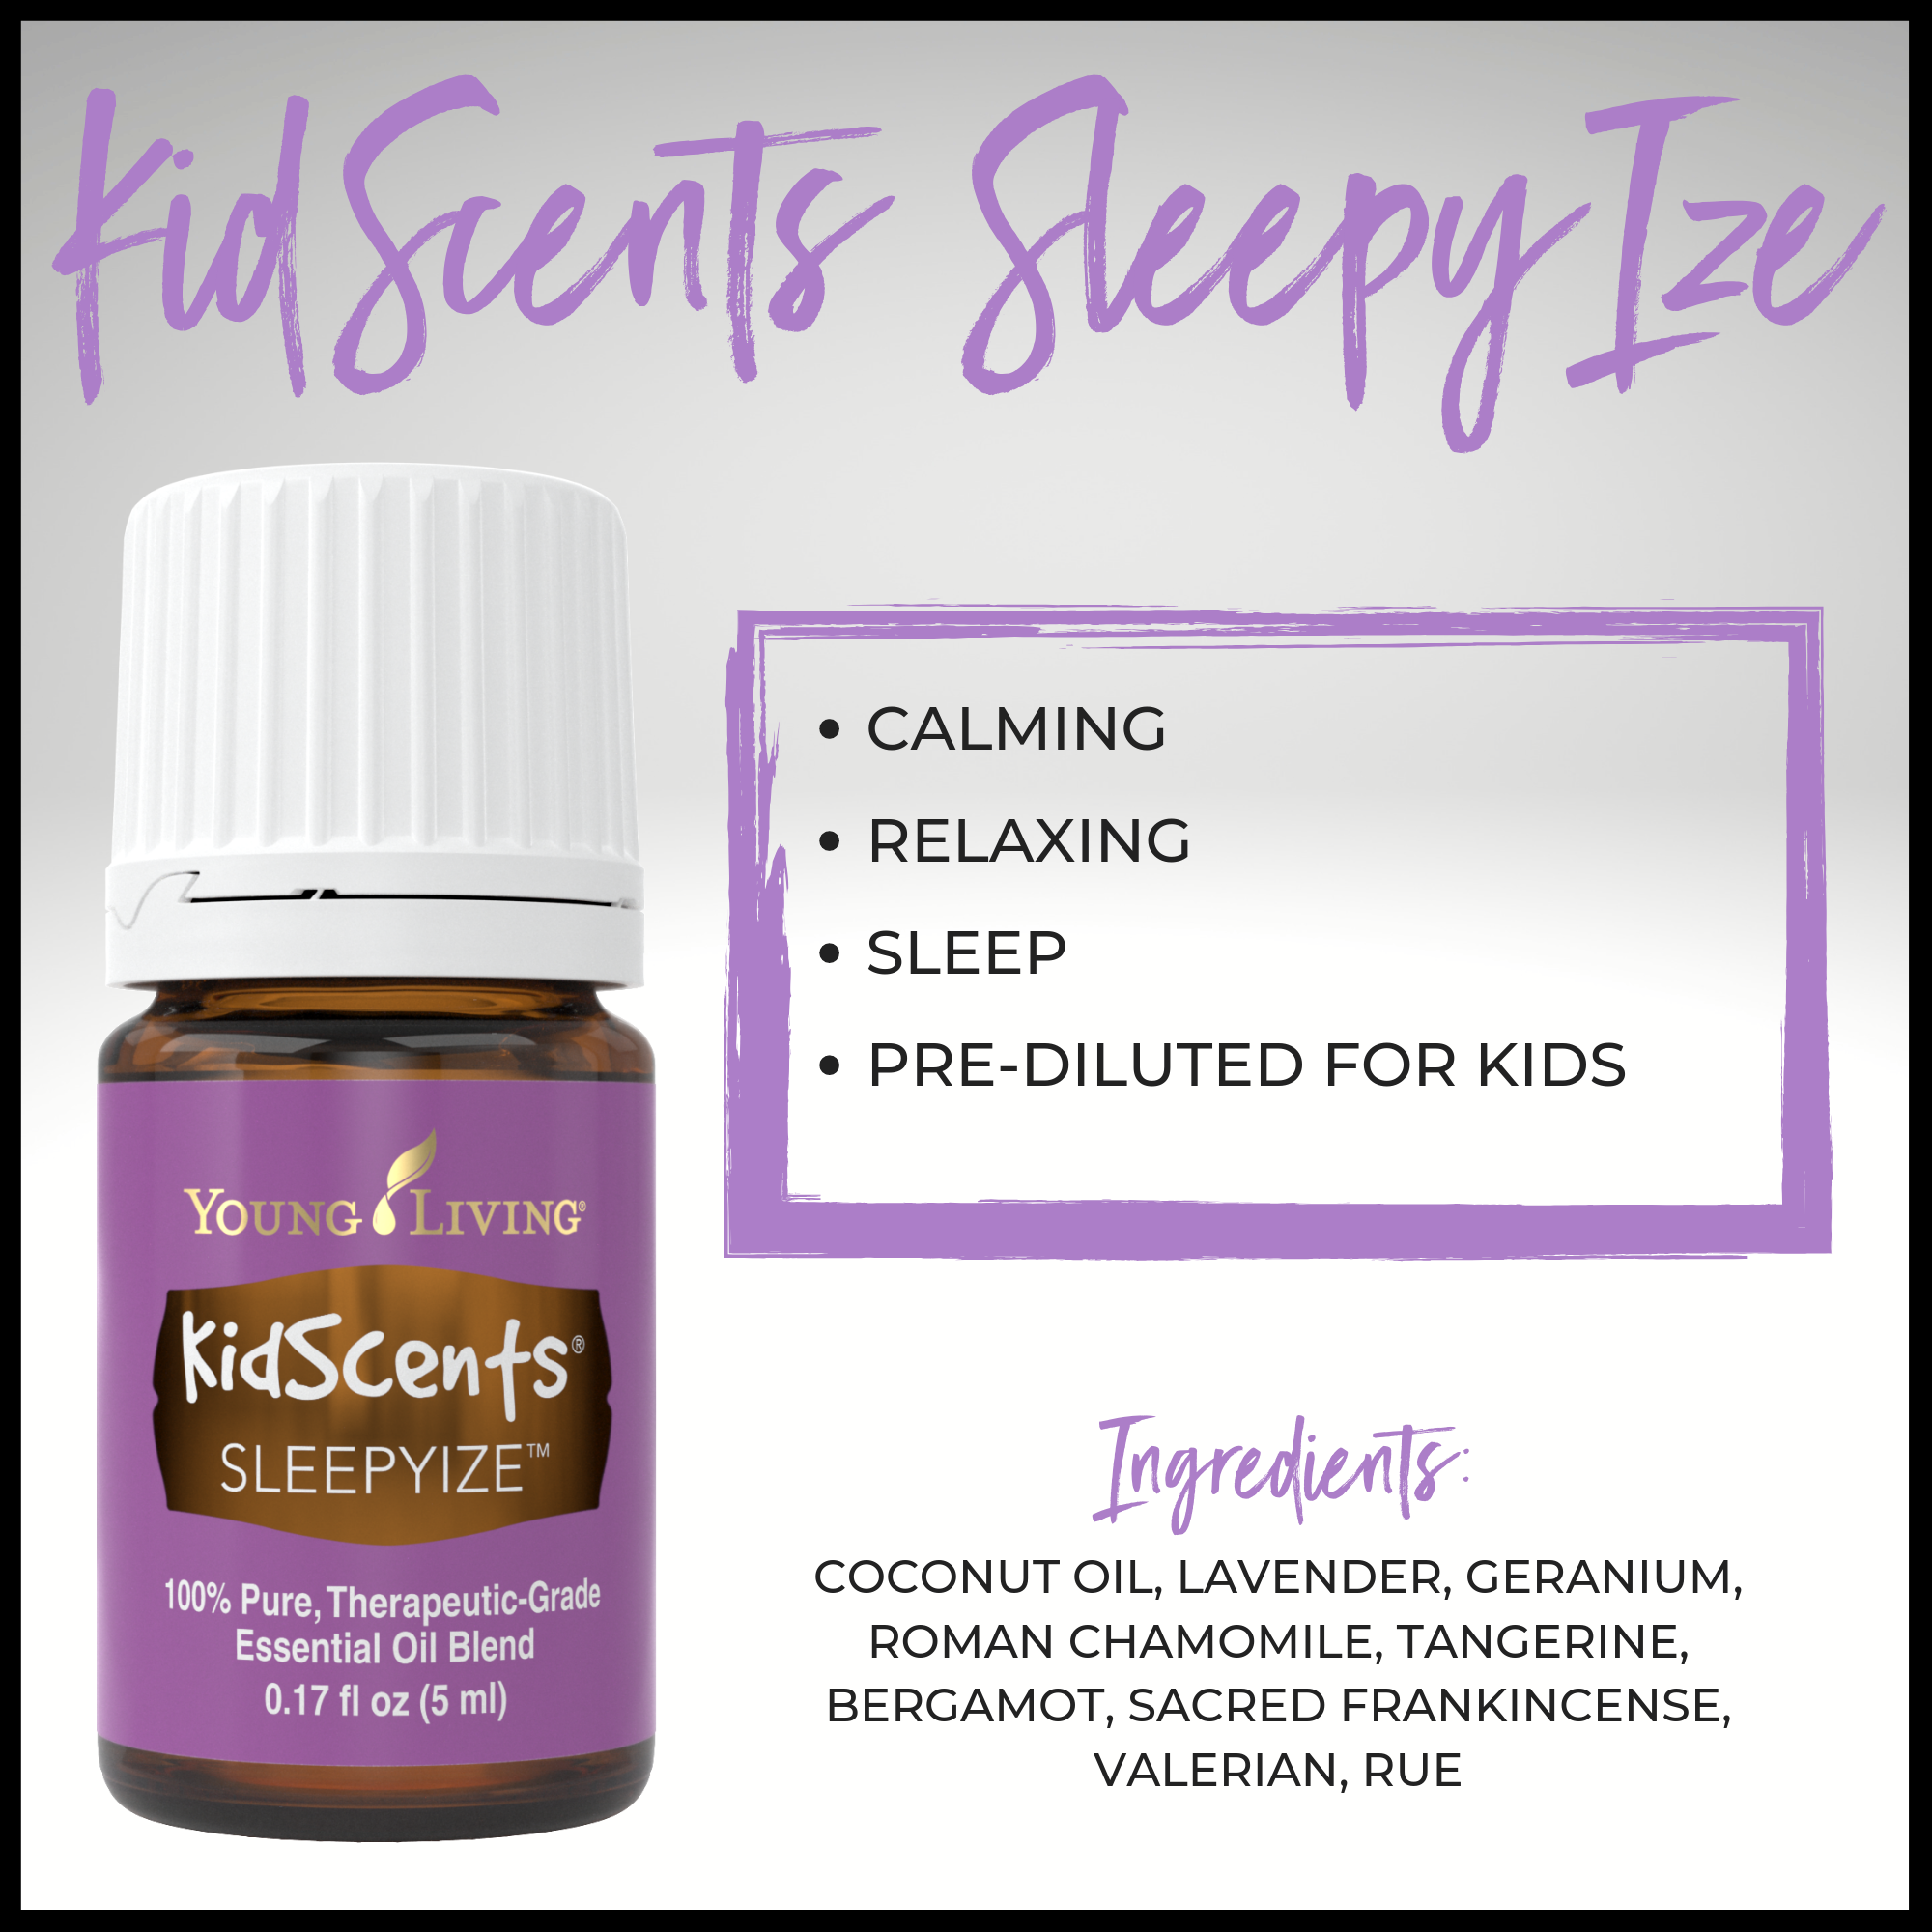 KidScents SleepyIze